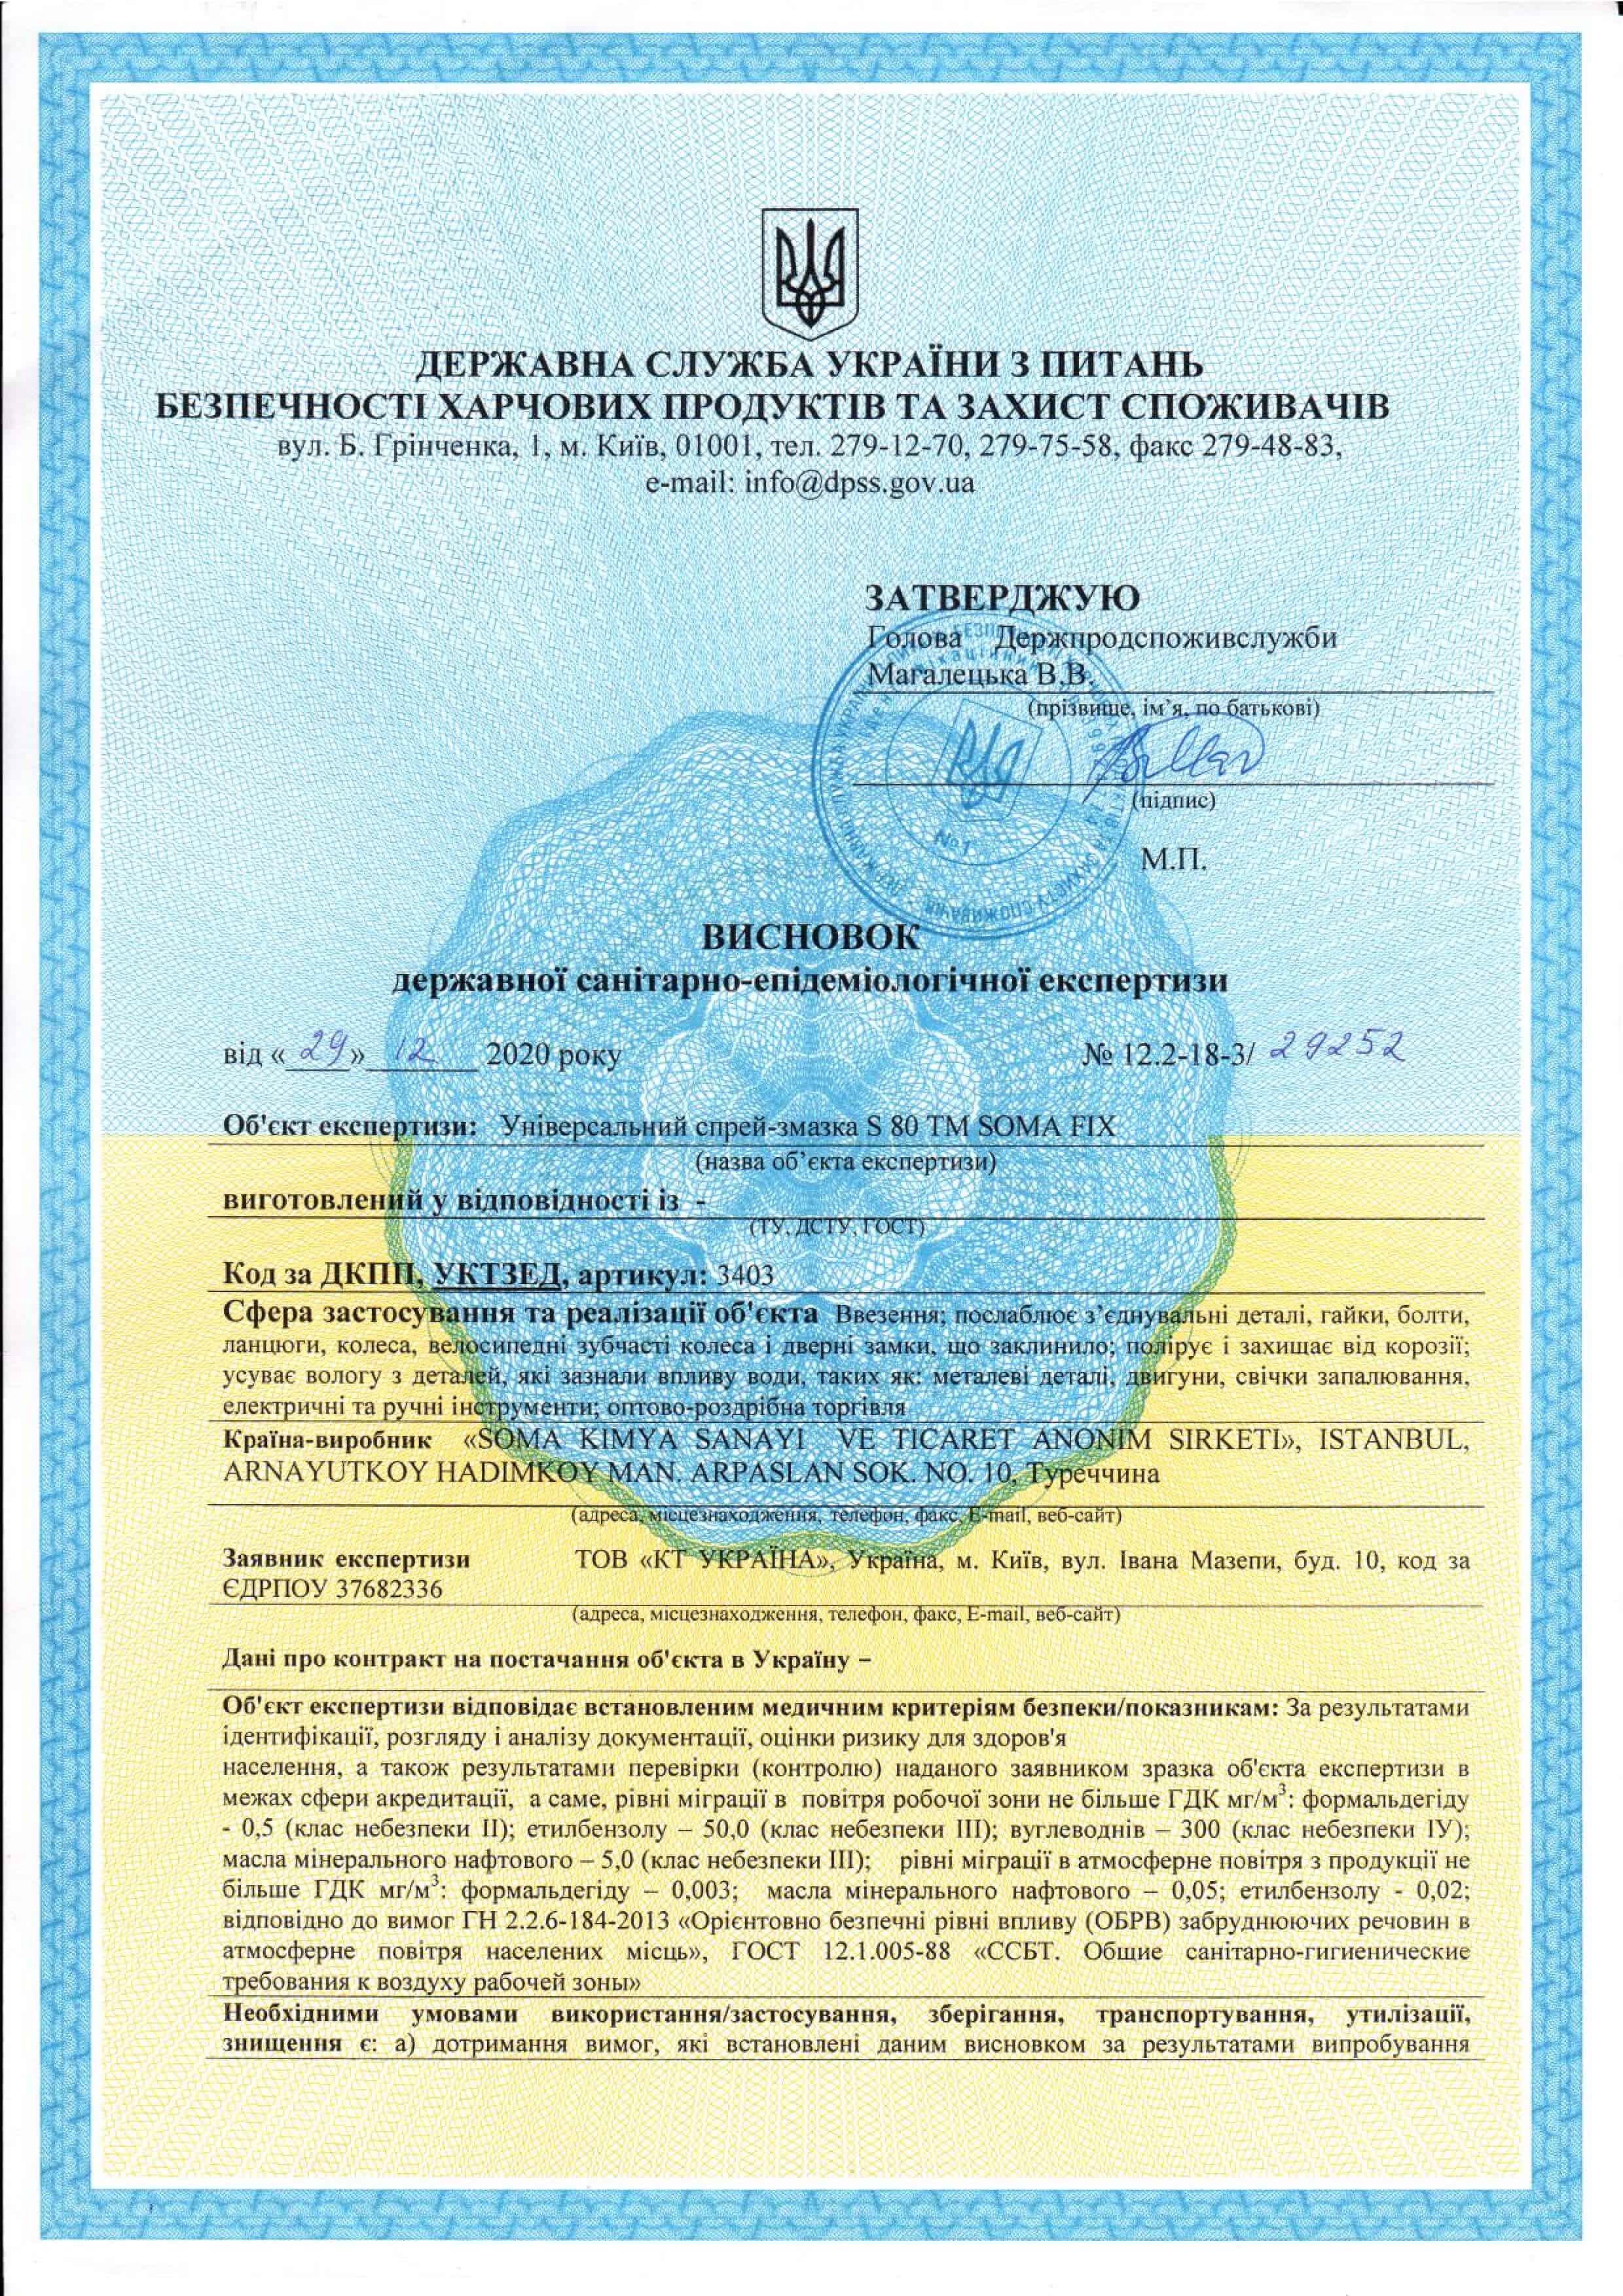 Сертификаты на гель смазку Somafix - фото № 1